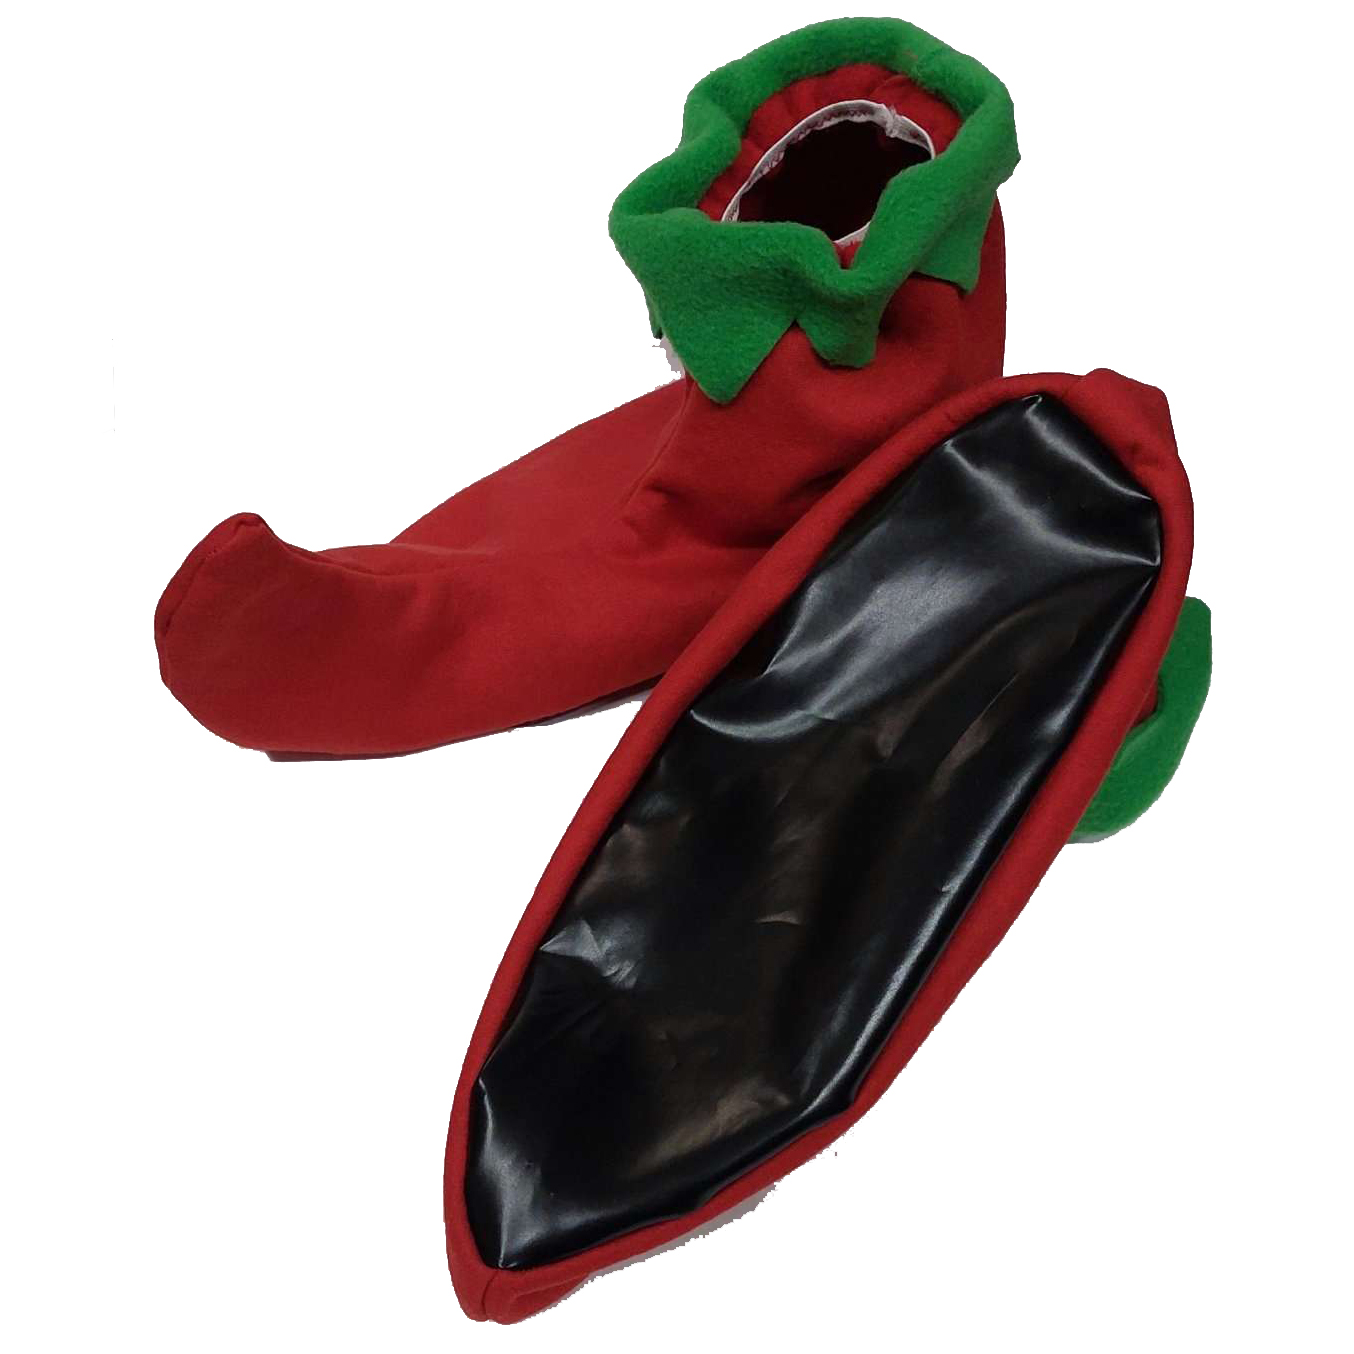 Красные башмаки гнома - чехлы на обувь